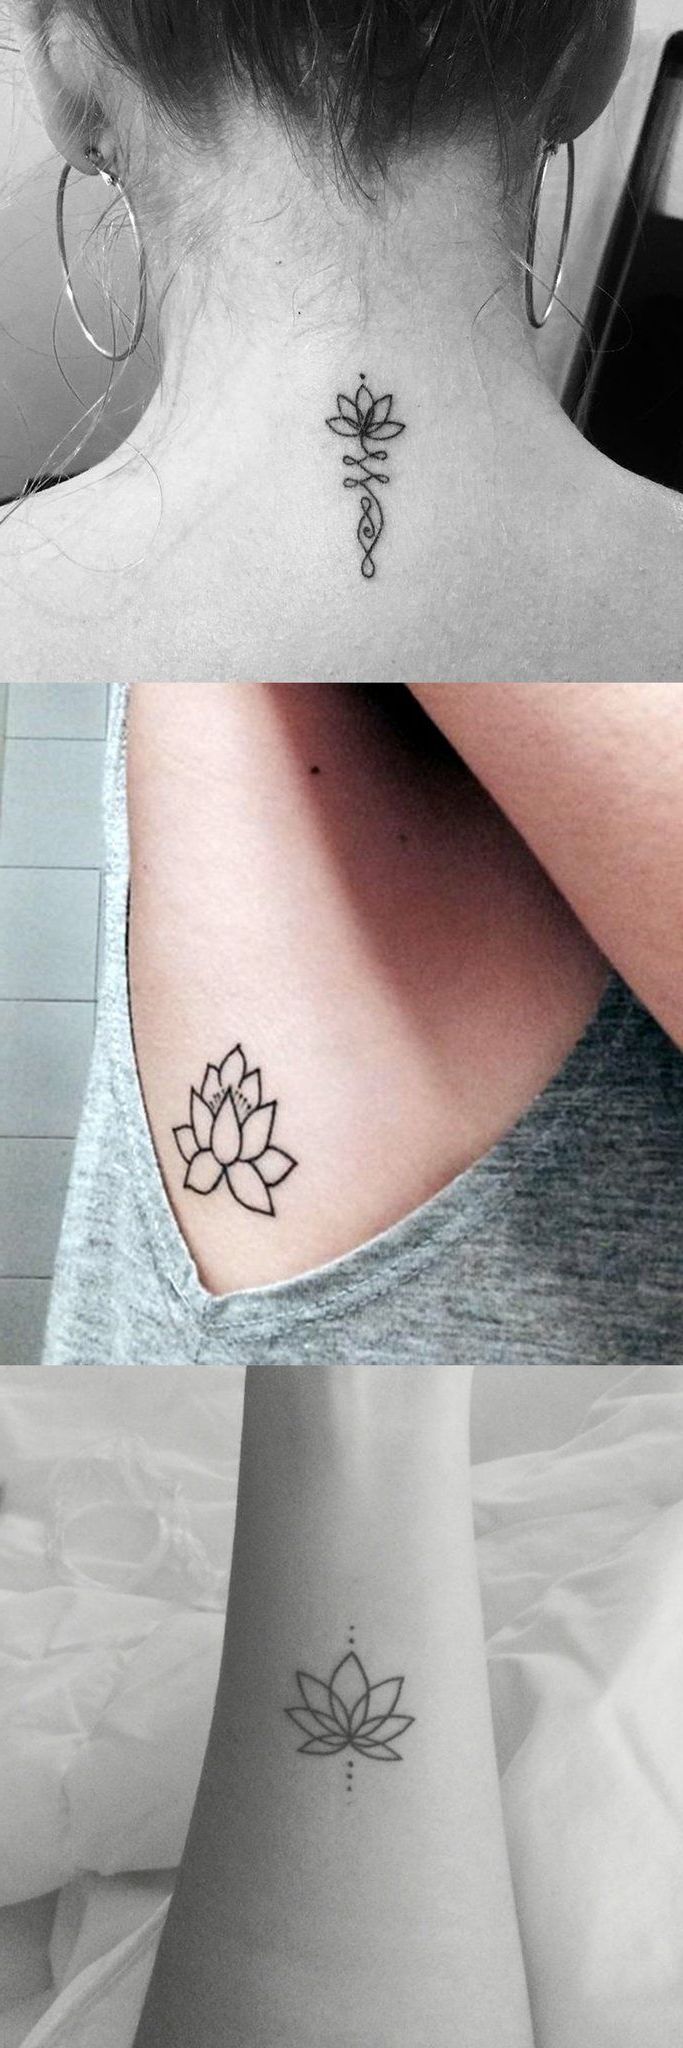 Kleine Tattoos Lotusblume Tattoos